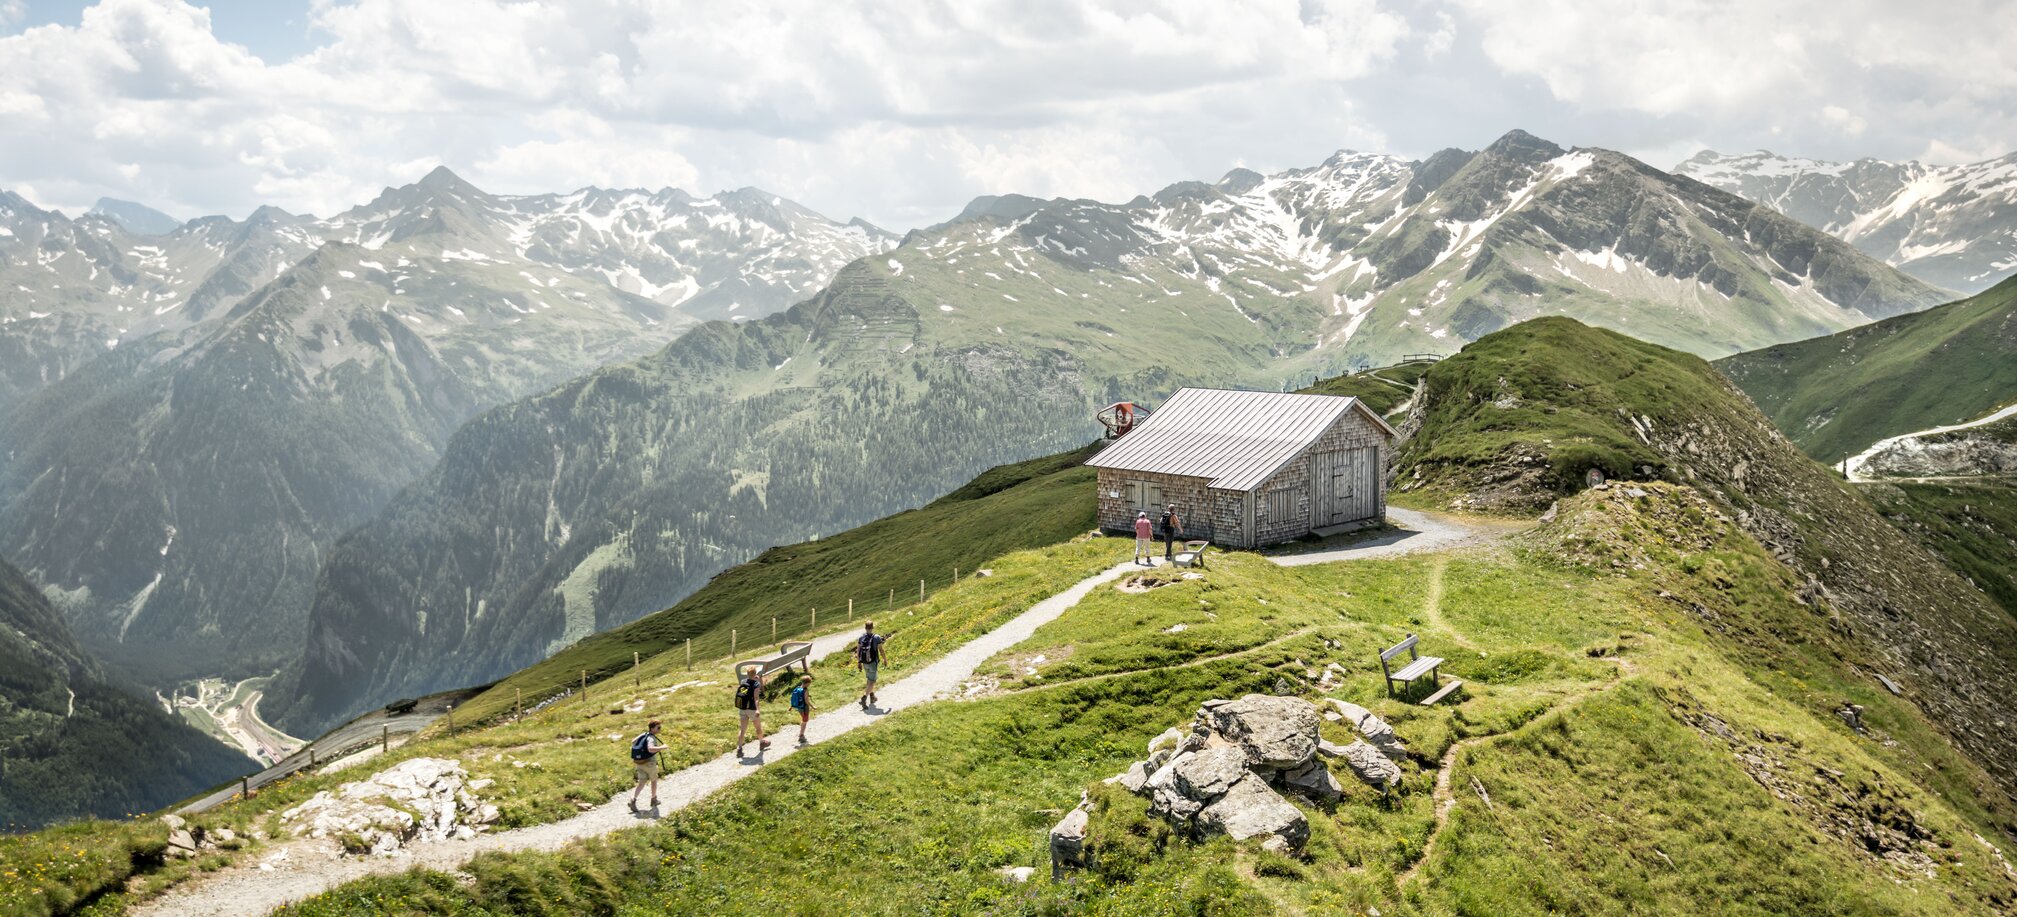 Wandern in Gastein, der Sommer in den Bergen im Gasteiner Tal in Ski amadé | © Gasteinertal Tourismus GmbH